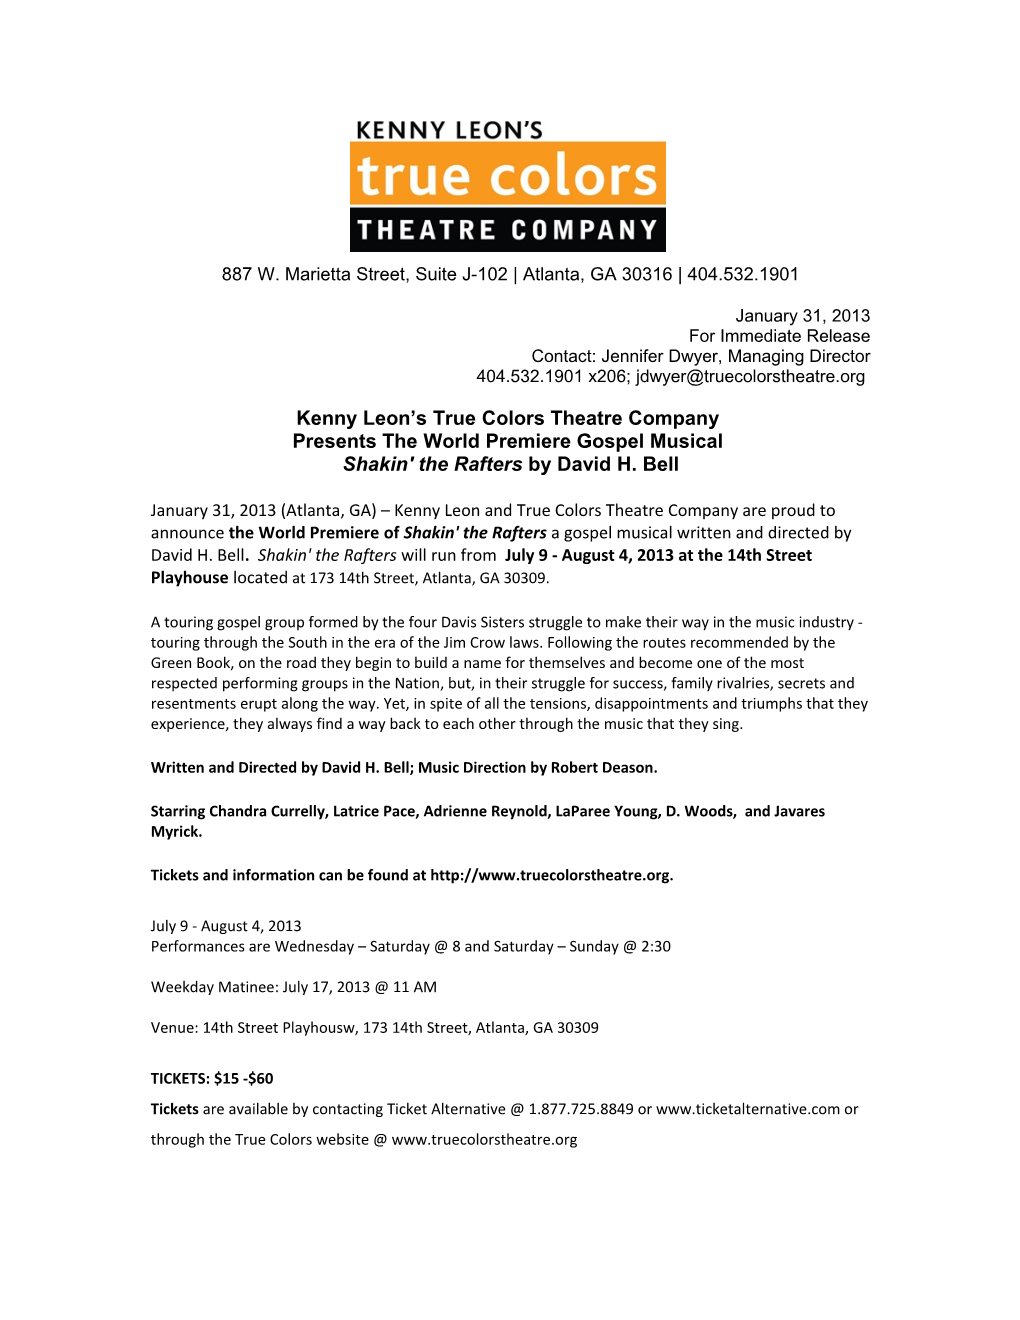 Kenny Leon S True Colors Theatre Company